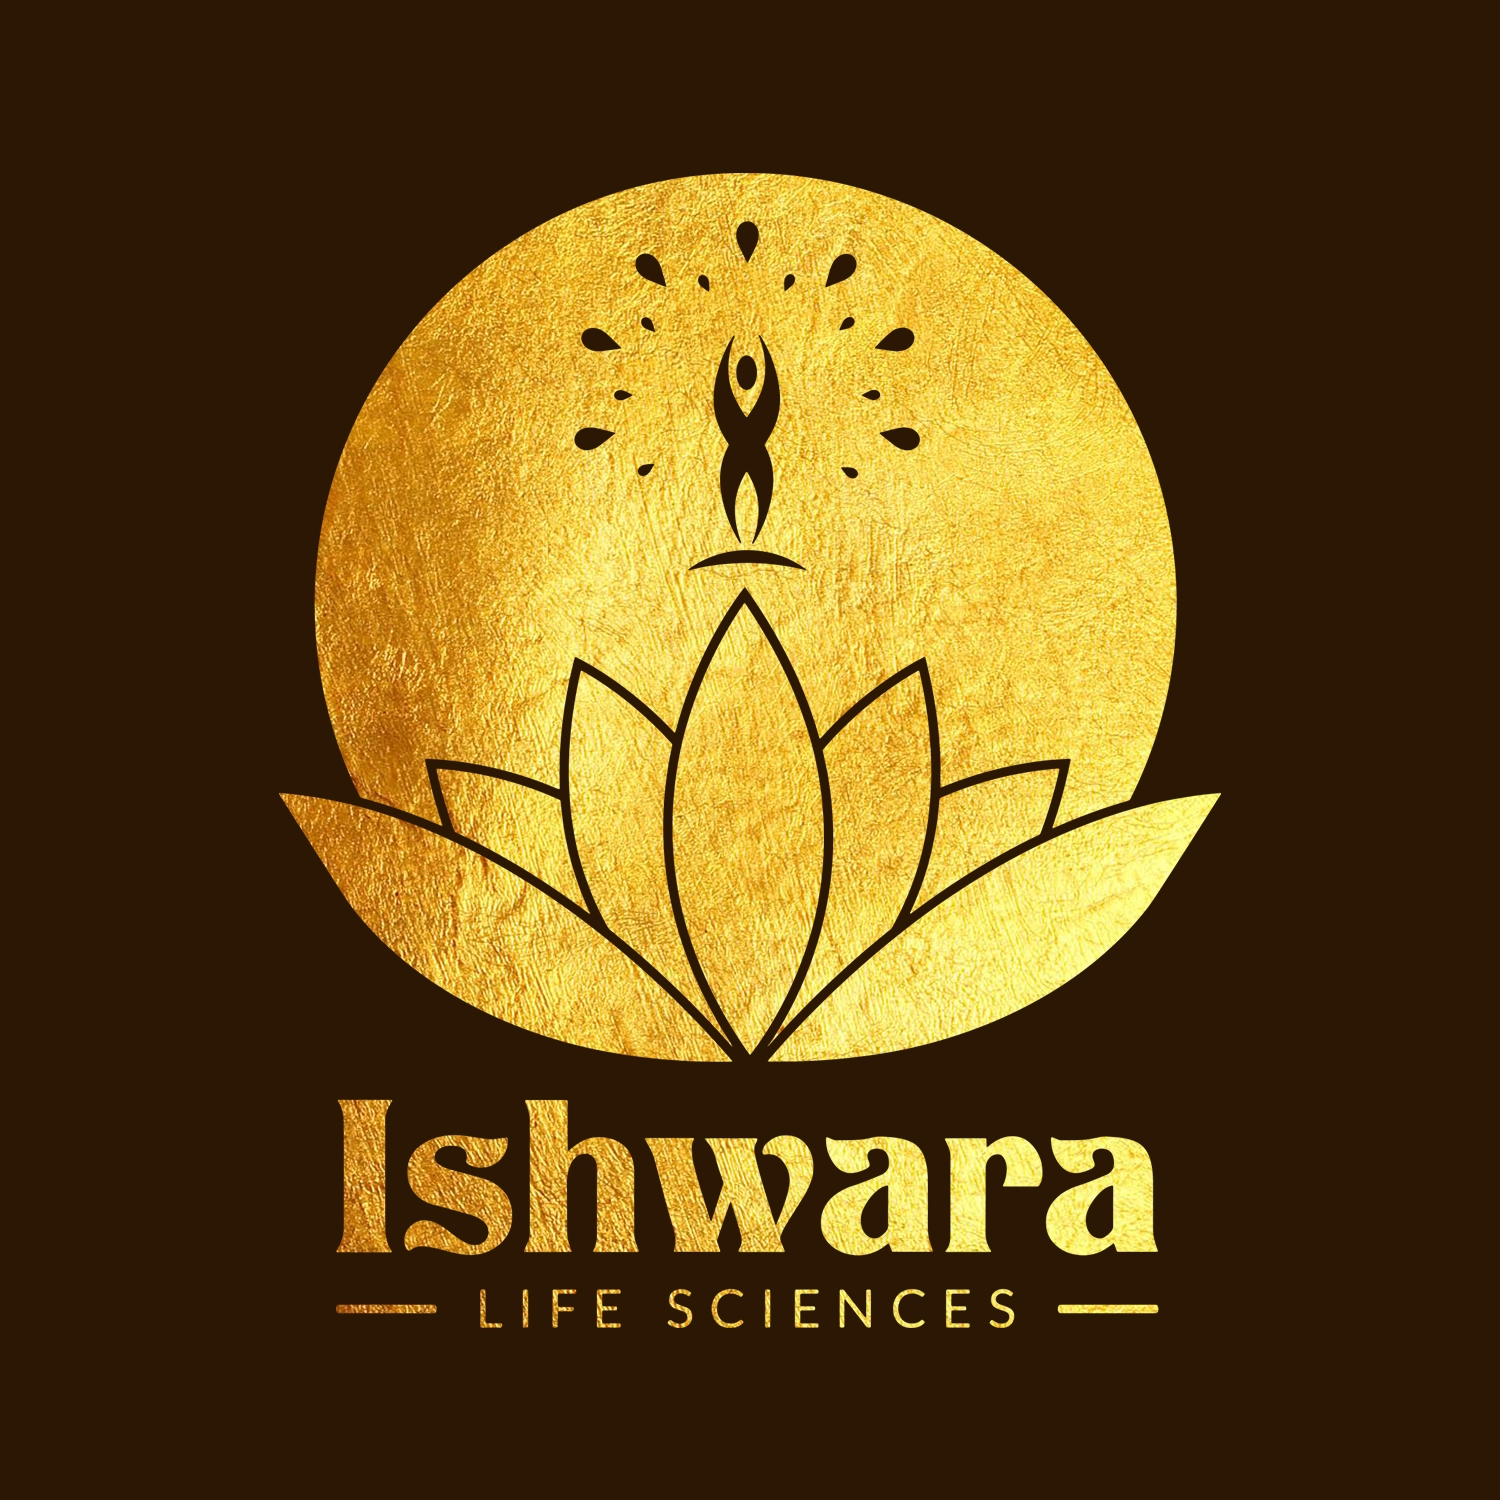 Ishwara Life Sciences